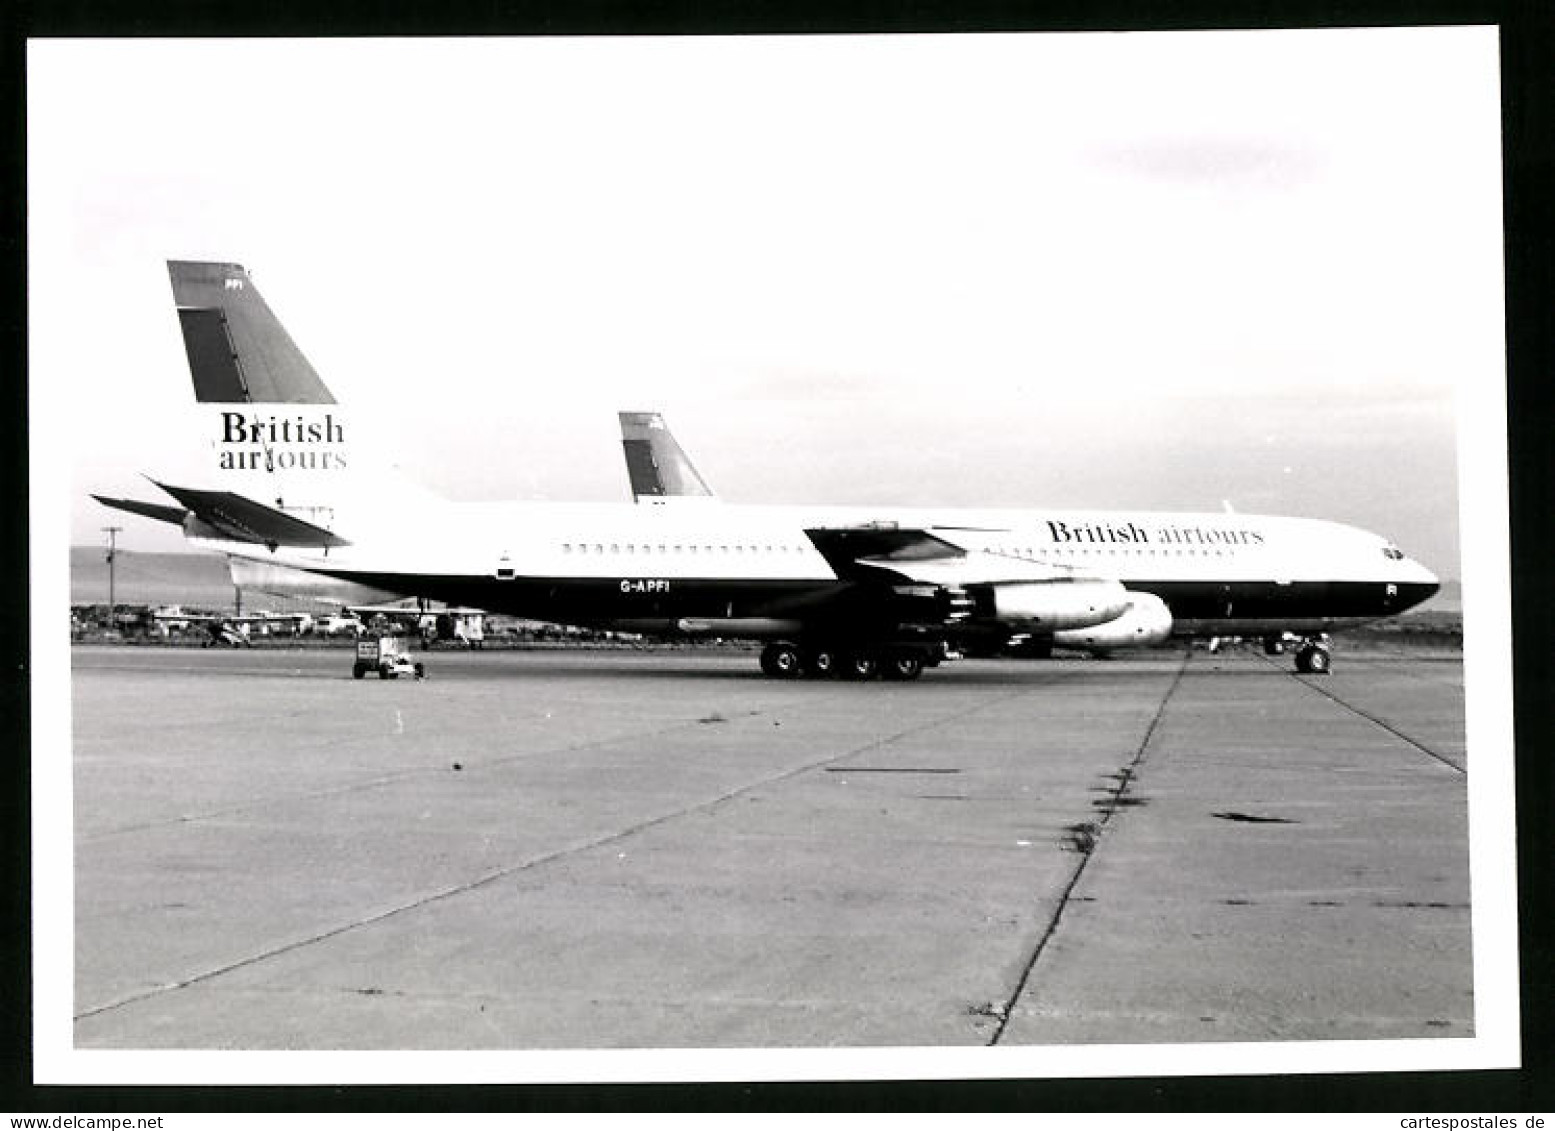 Fotografie Flugzeug Boeing 707, Passagierflugzeug British Airtours, Kennung G-APFI  - Luftfahrt